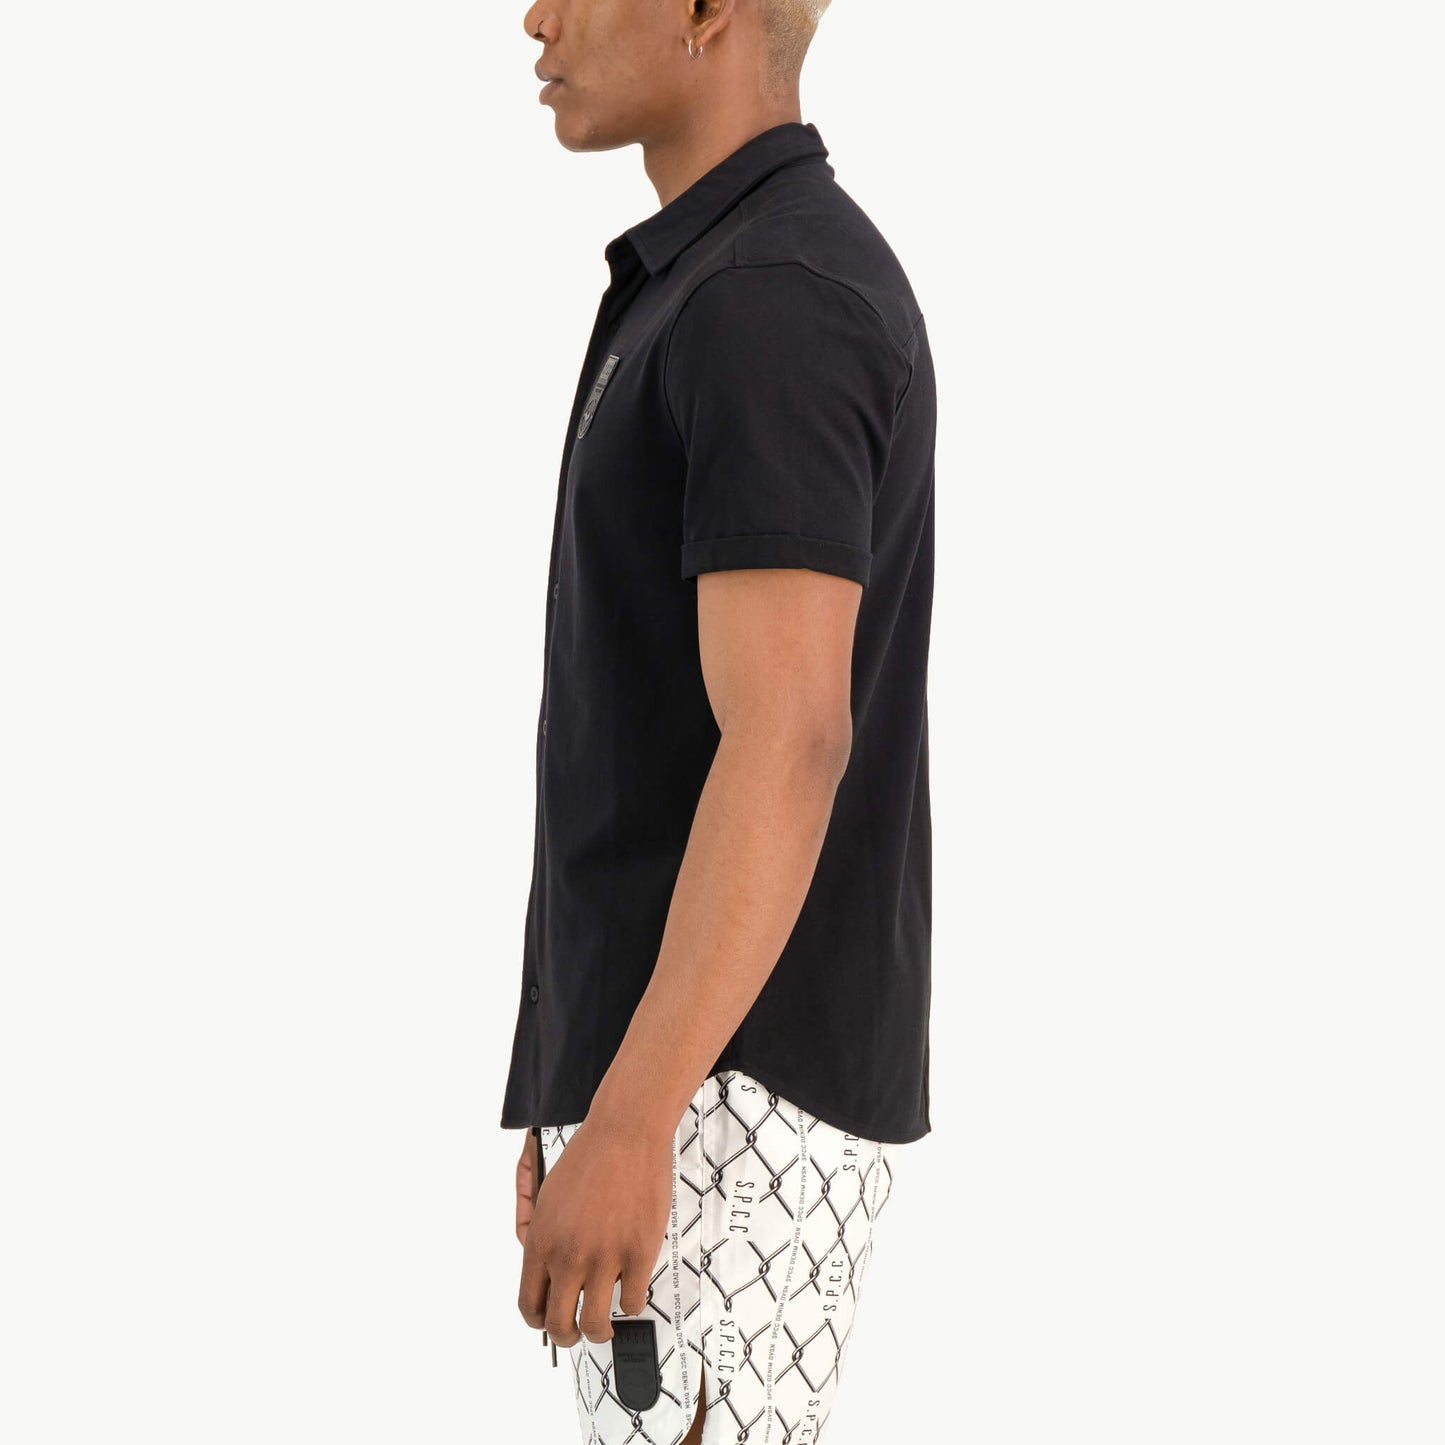 Reid Knit Shirt  - Black